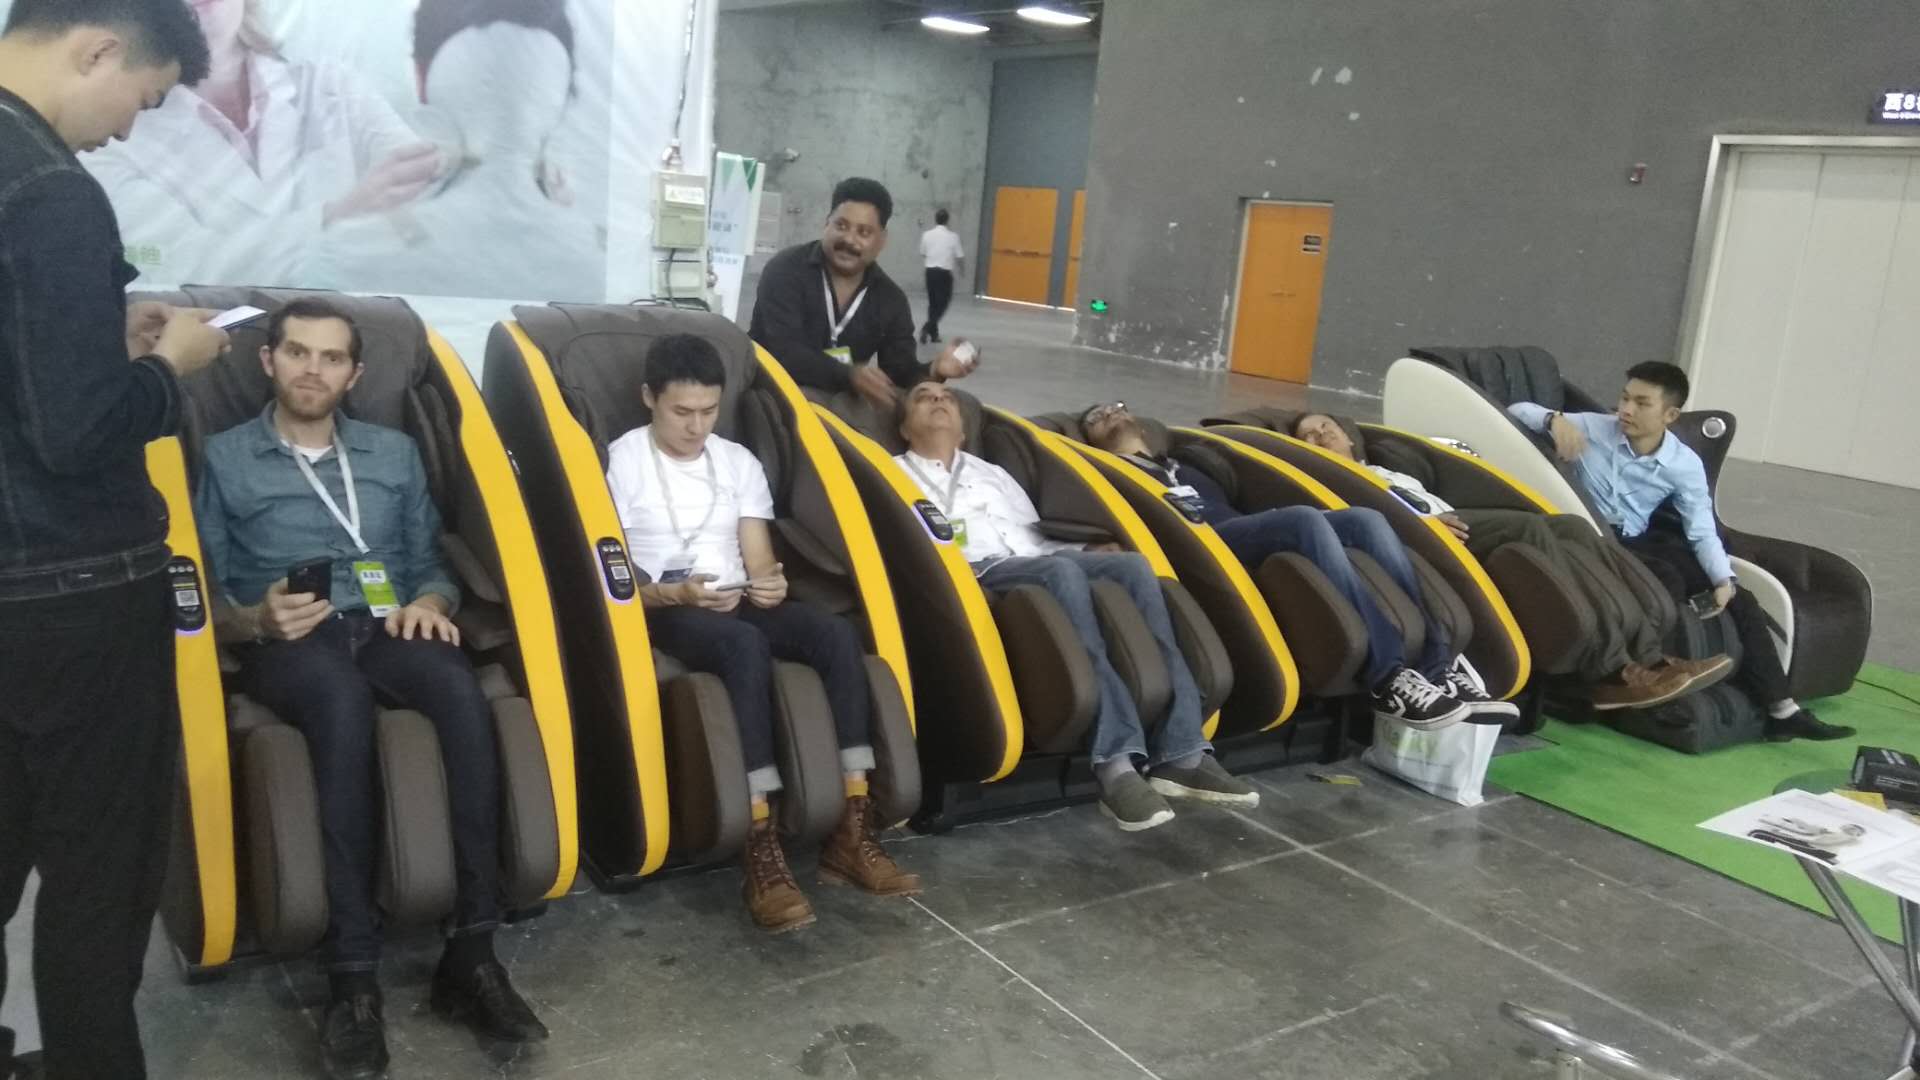 头等舱参加2019年第九届广州国际康复设备展览会， 高端共享按摩椅吸引众多商家目光